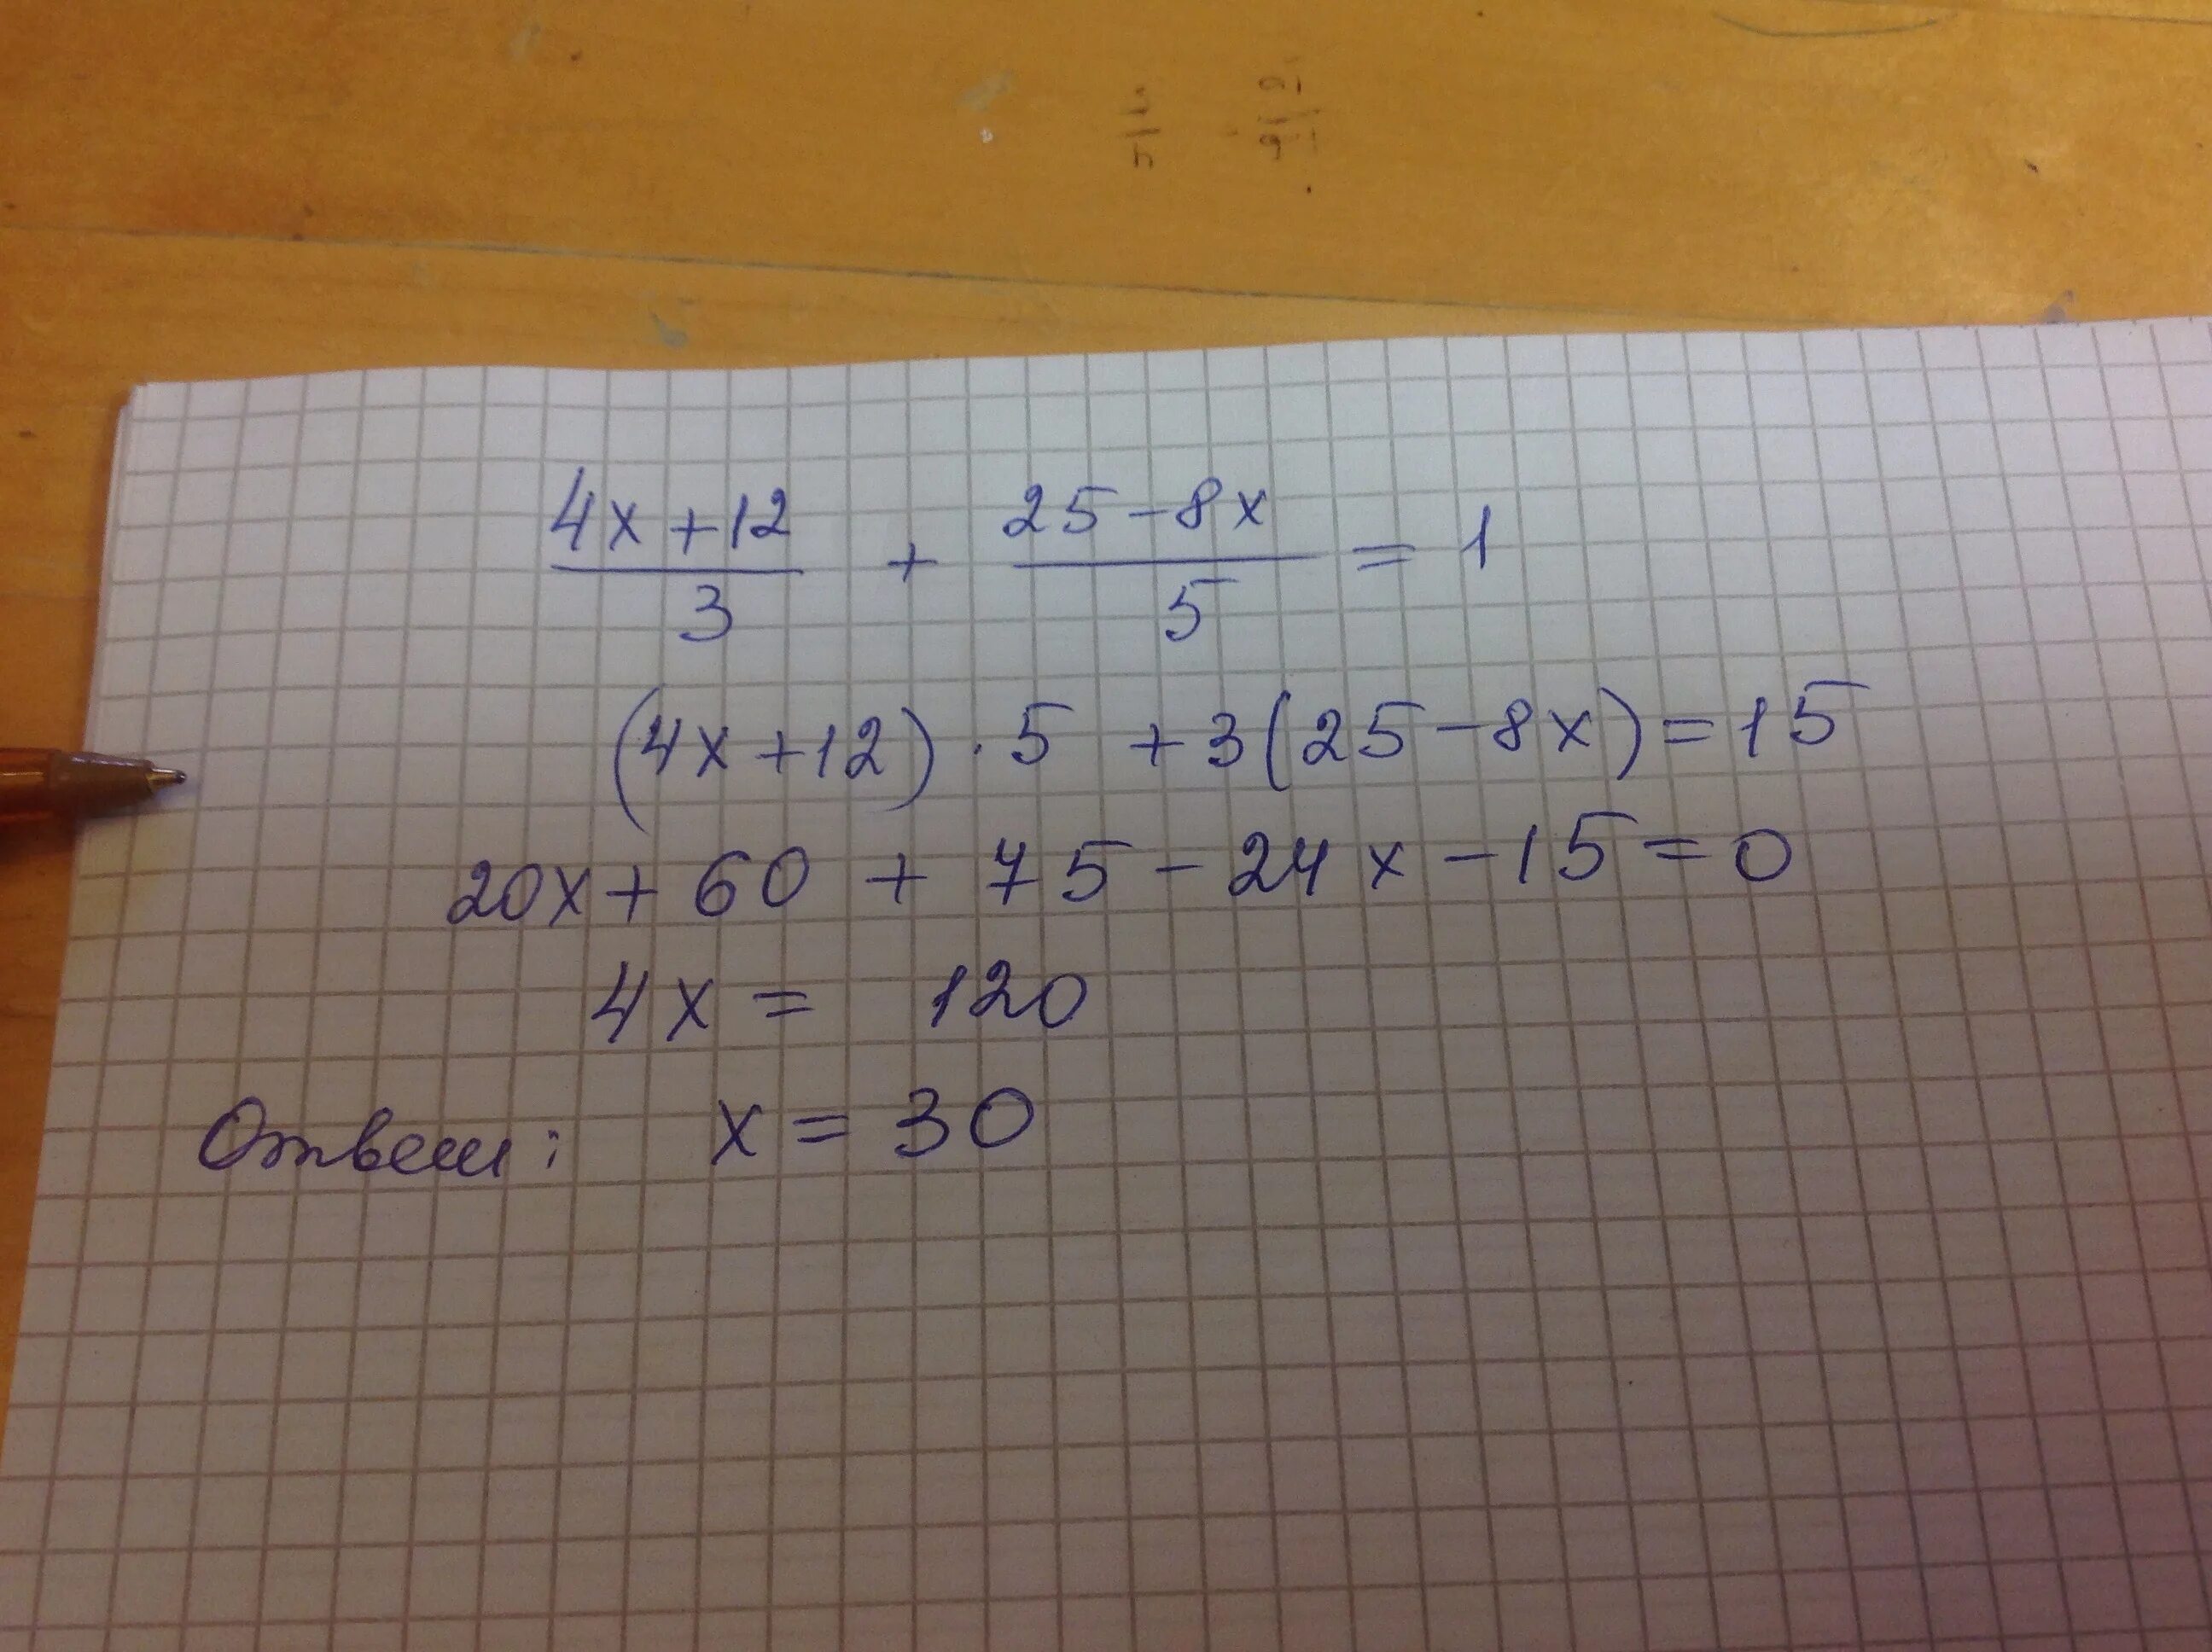 2х 5 2х 1 11. -(Х+5)-(3х-8)=-4. 5х1,5. Х+3 8/5=12. 12+8.3Х+1.5Х 95.3 решение.